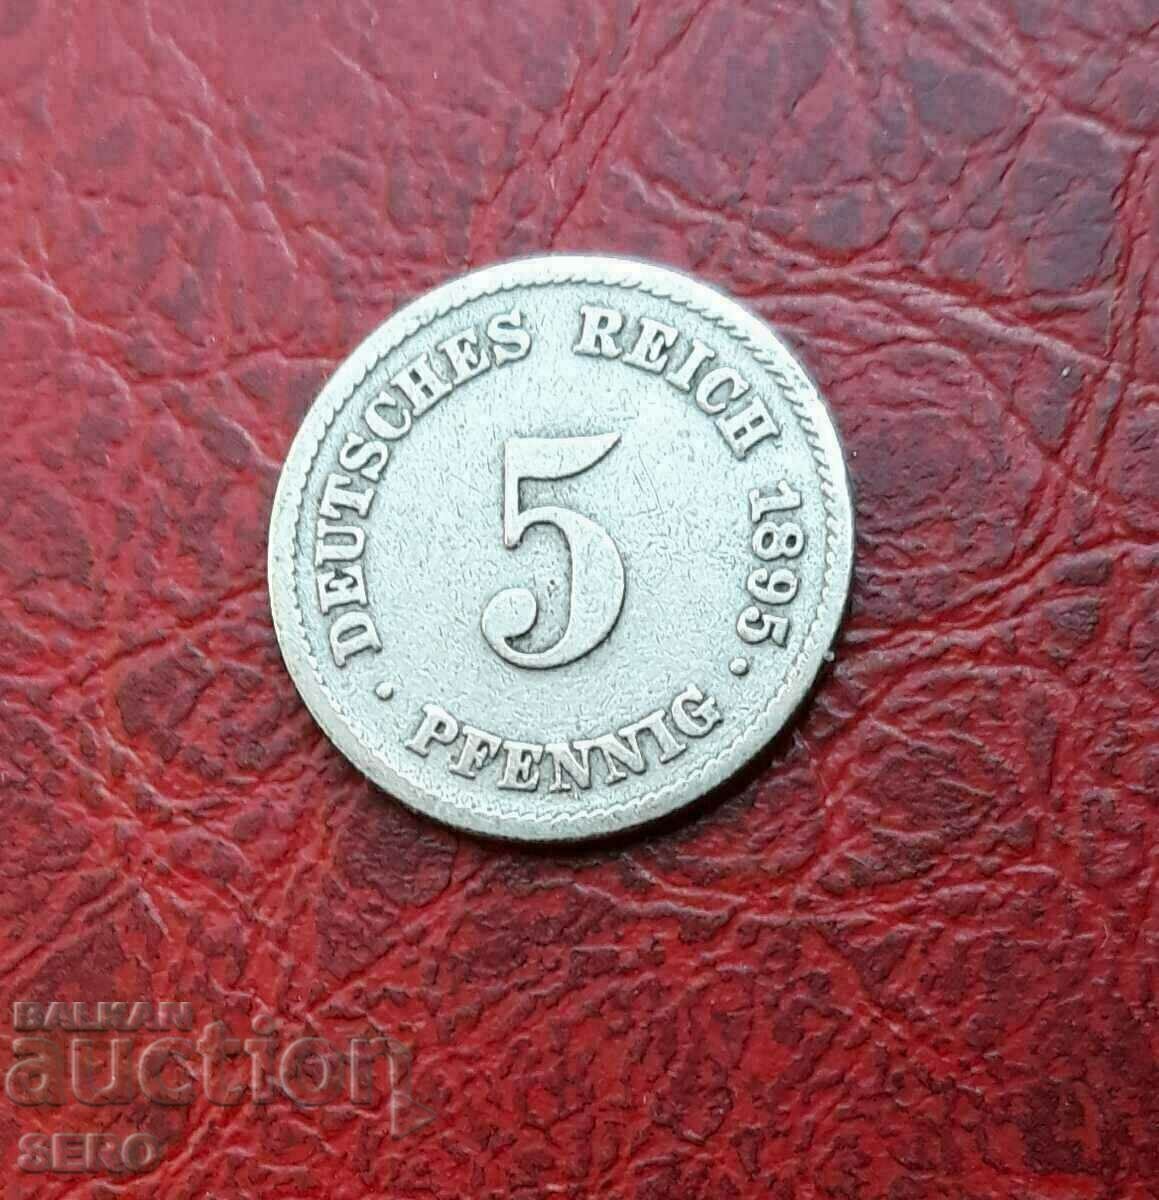 Γερμανία-5 Pfennig 1895 E-Muldenhüten-σπάνιο